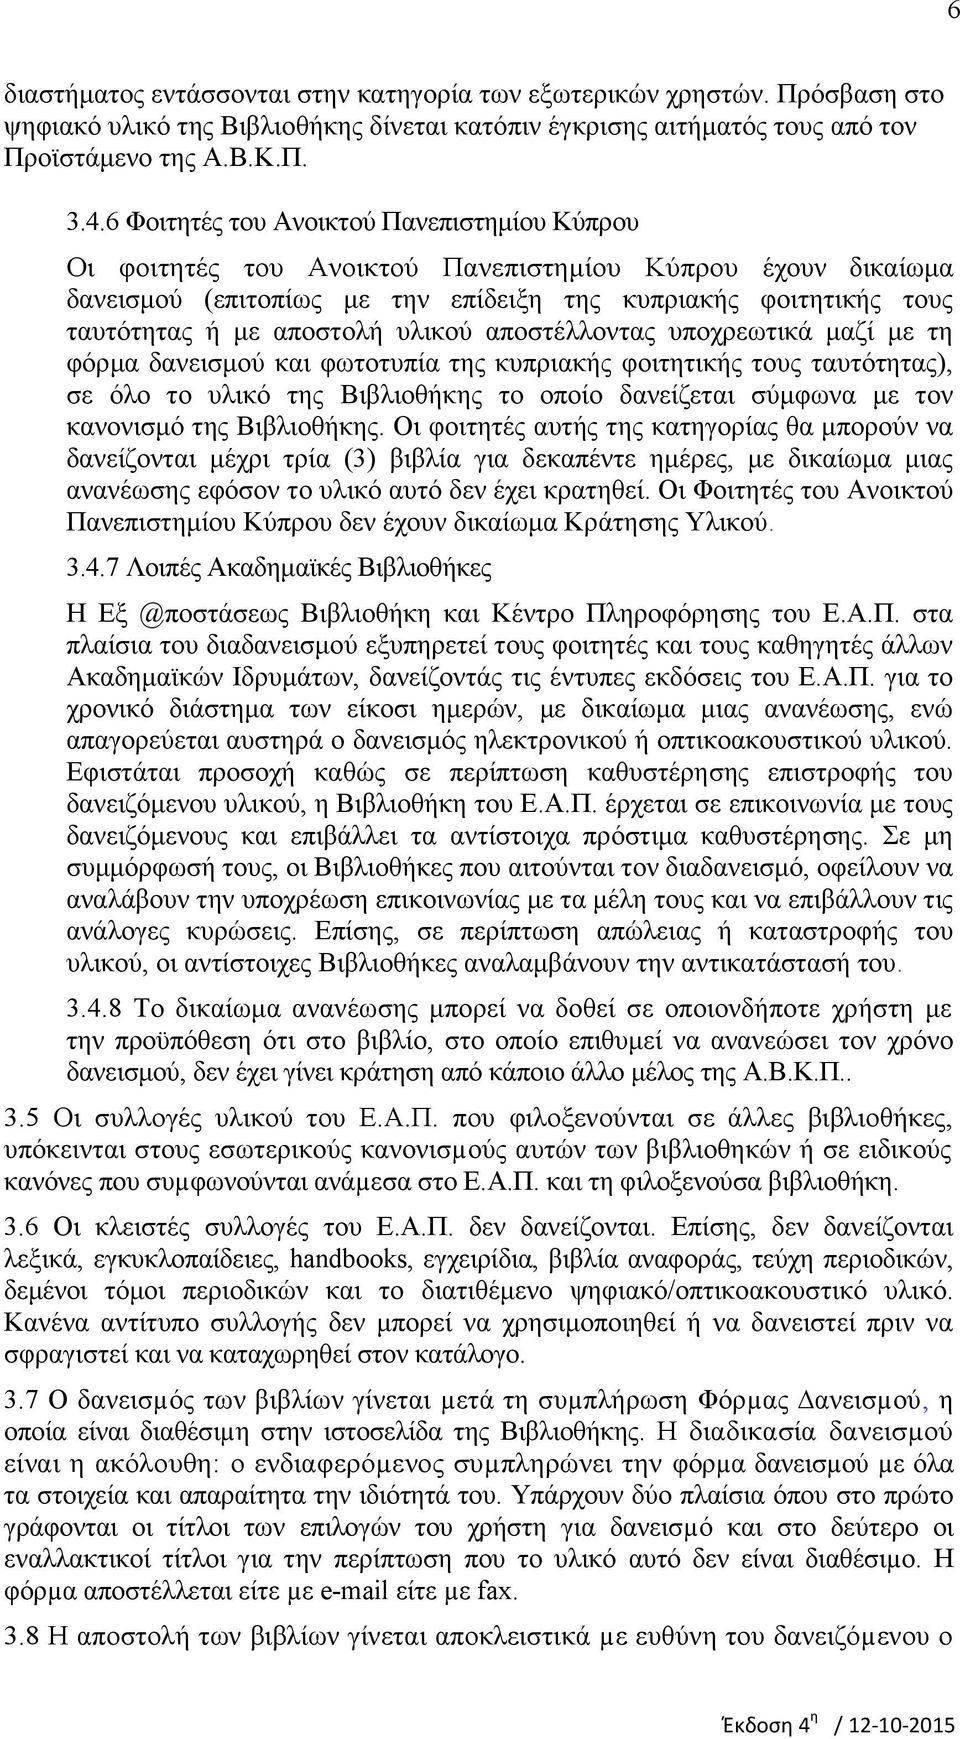 υλικού αποστέλλοντας υποχρεωτικά μαζί με τη φόρμα δανεισμού και φωτοτυπία της κυπριακής φοιτητικής τους ταυτότητας), σε όλο το υλικό της Βιβλιοθήκης το οποίο δανείζεται σύμφωνα με τον κανονισμό της